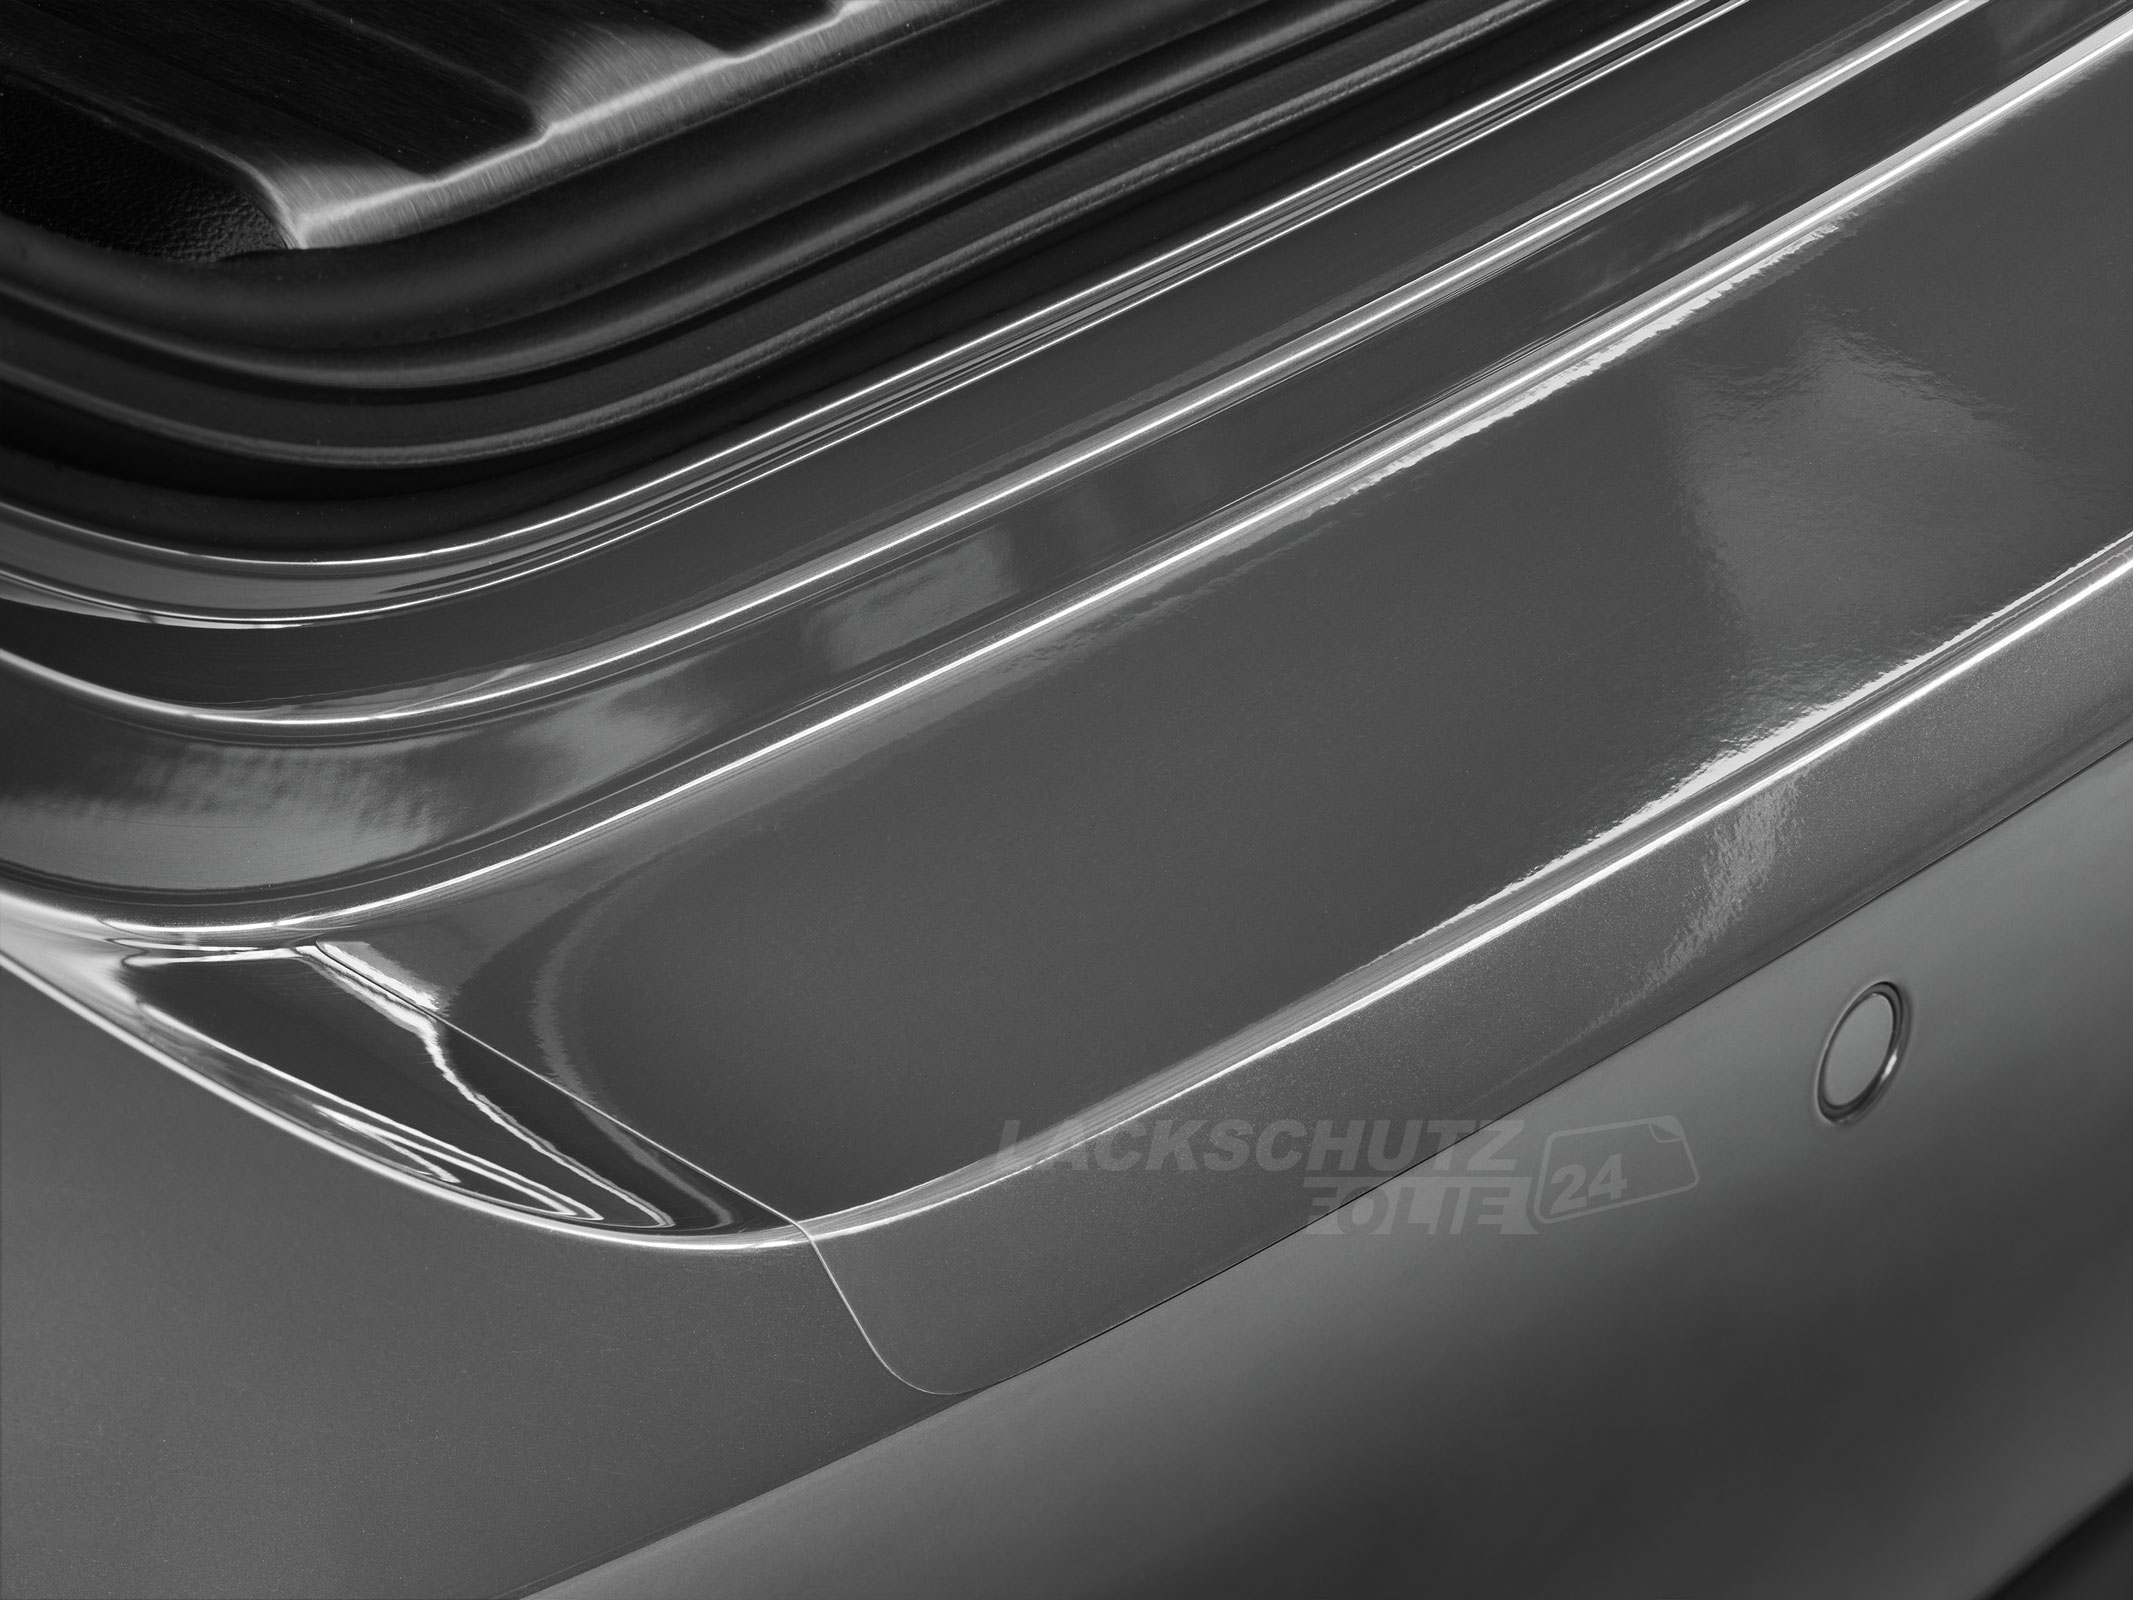 Ladekantenschutzfolie - Transparent Glatt Hochglänzend 240 µm stark für Fiat Freemont ab BJ 2011